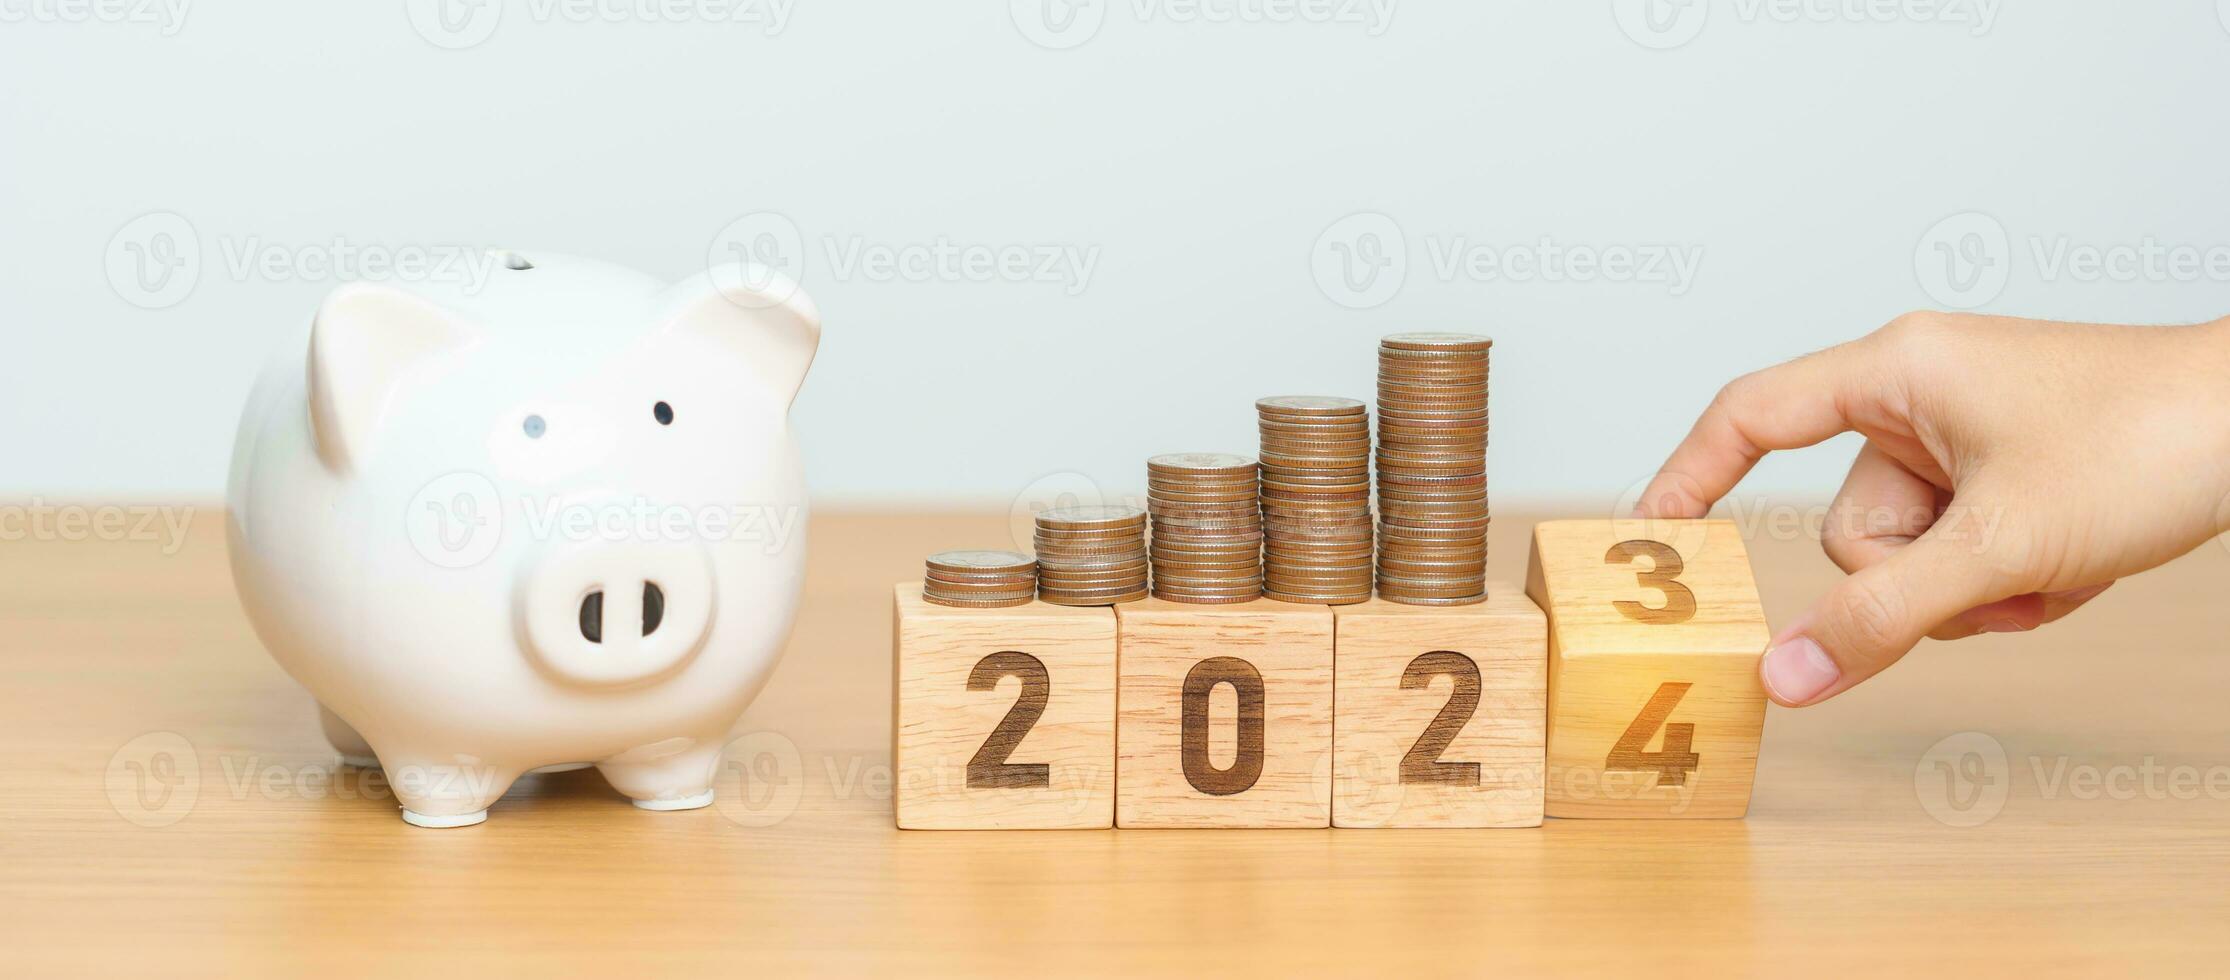 glücklich Neu Jahr mit Schweinchen Bank und umdrehen 2023 Veränderung zu 2024 Block. Auflösung, Ziele, planen, Aktion, Geld sparen, Pensionierung Fonds, die Pension, Investition und finanziell Konzept foto